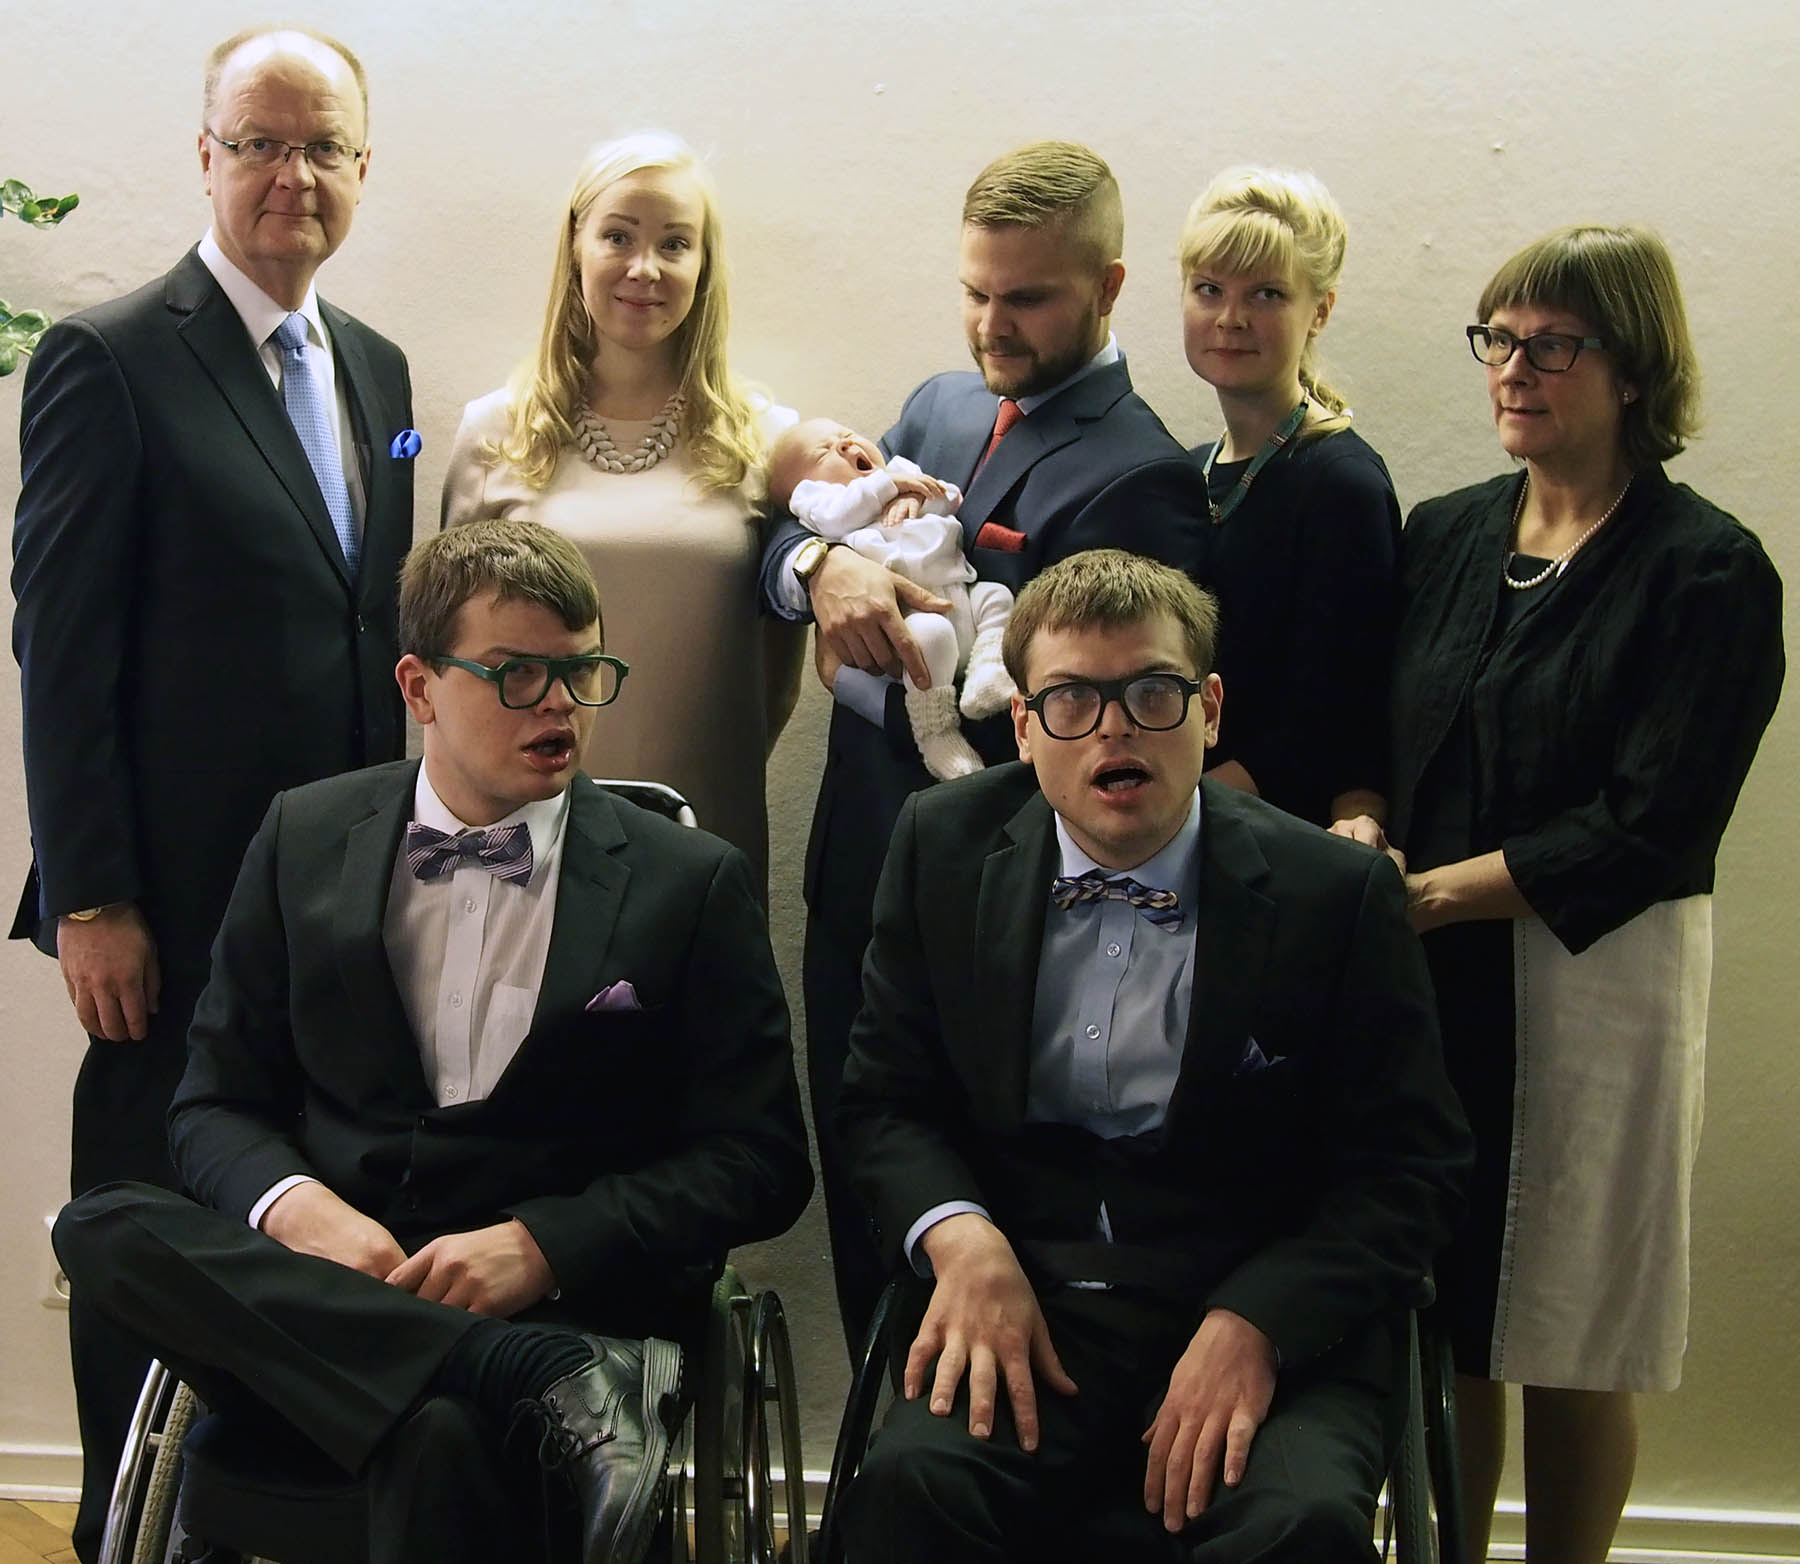 Perhepotretti kuvattiin ensimmäisen lapsenlapsen, Liljan, ristiäisissä helmikuussa 2015. Kuvassa edessä Robin (vas.) ja Markus, takana Jyrki (vas.), Rasmuksen puoliso Sara, Rasmus ja Lilja, Martina ja Marianne.